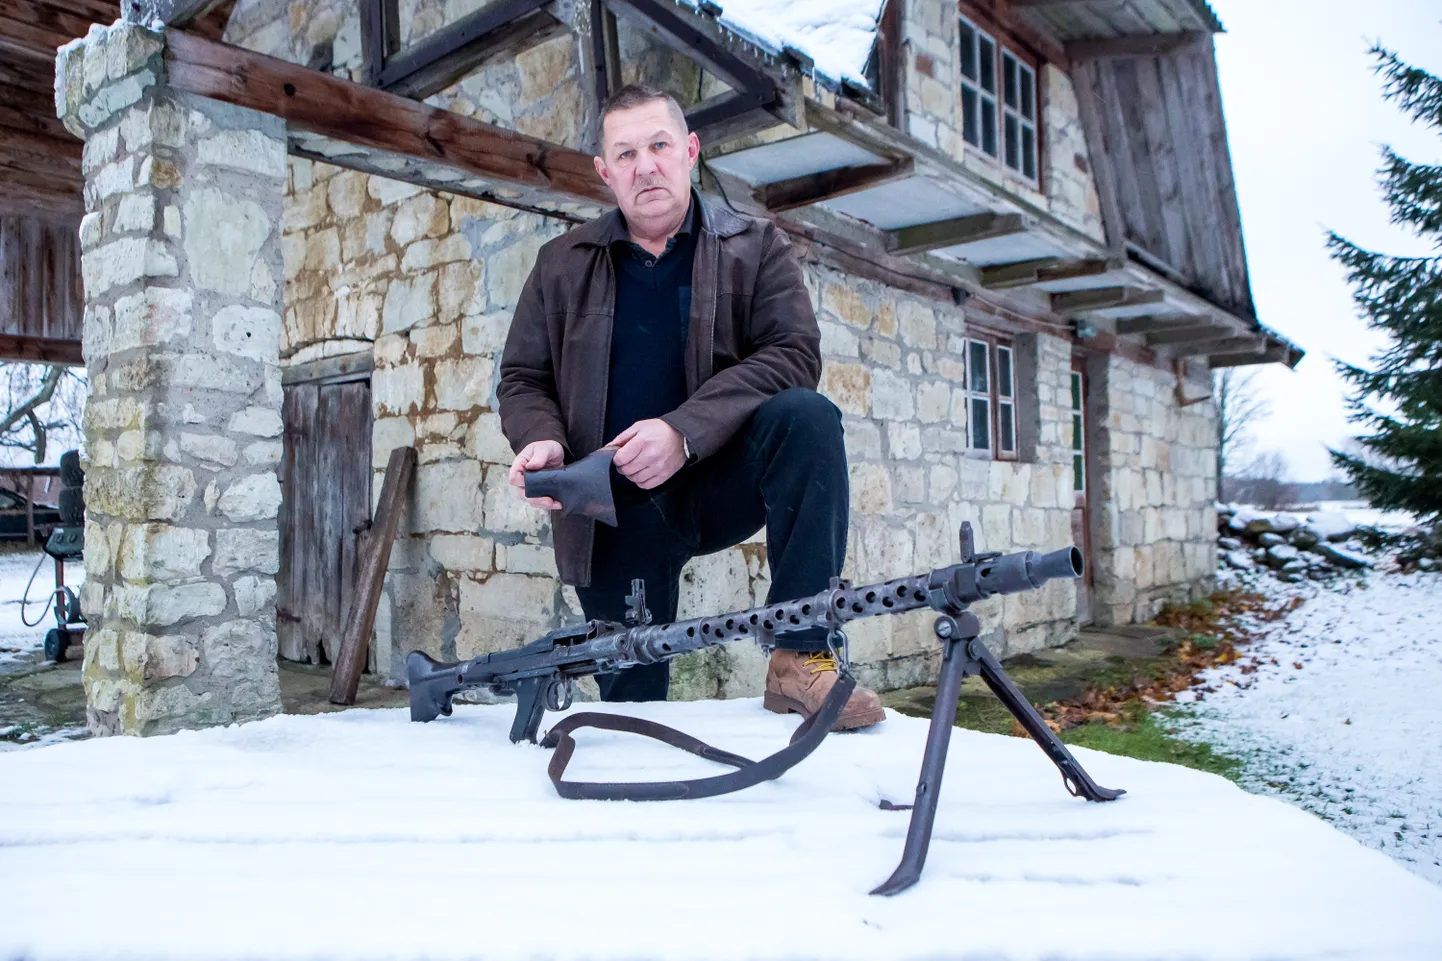 MÕTLES VABAST EESTIST: Mati Vendel hakkas relvi koguma just selle pärast, et uskus Eesti vabaks saamisse.
MAANUS MASING